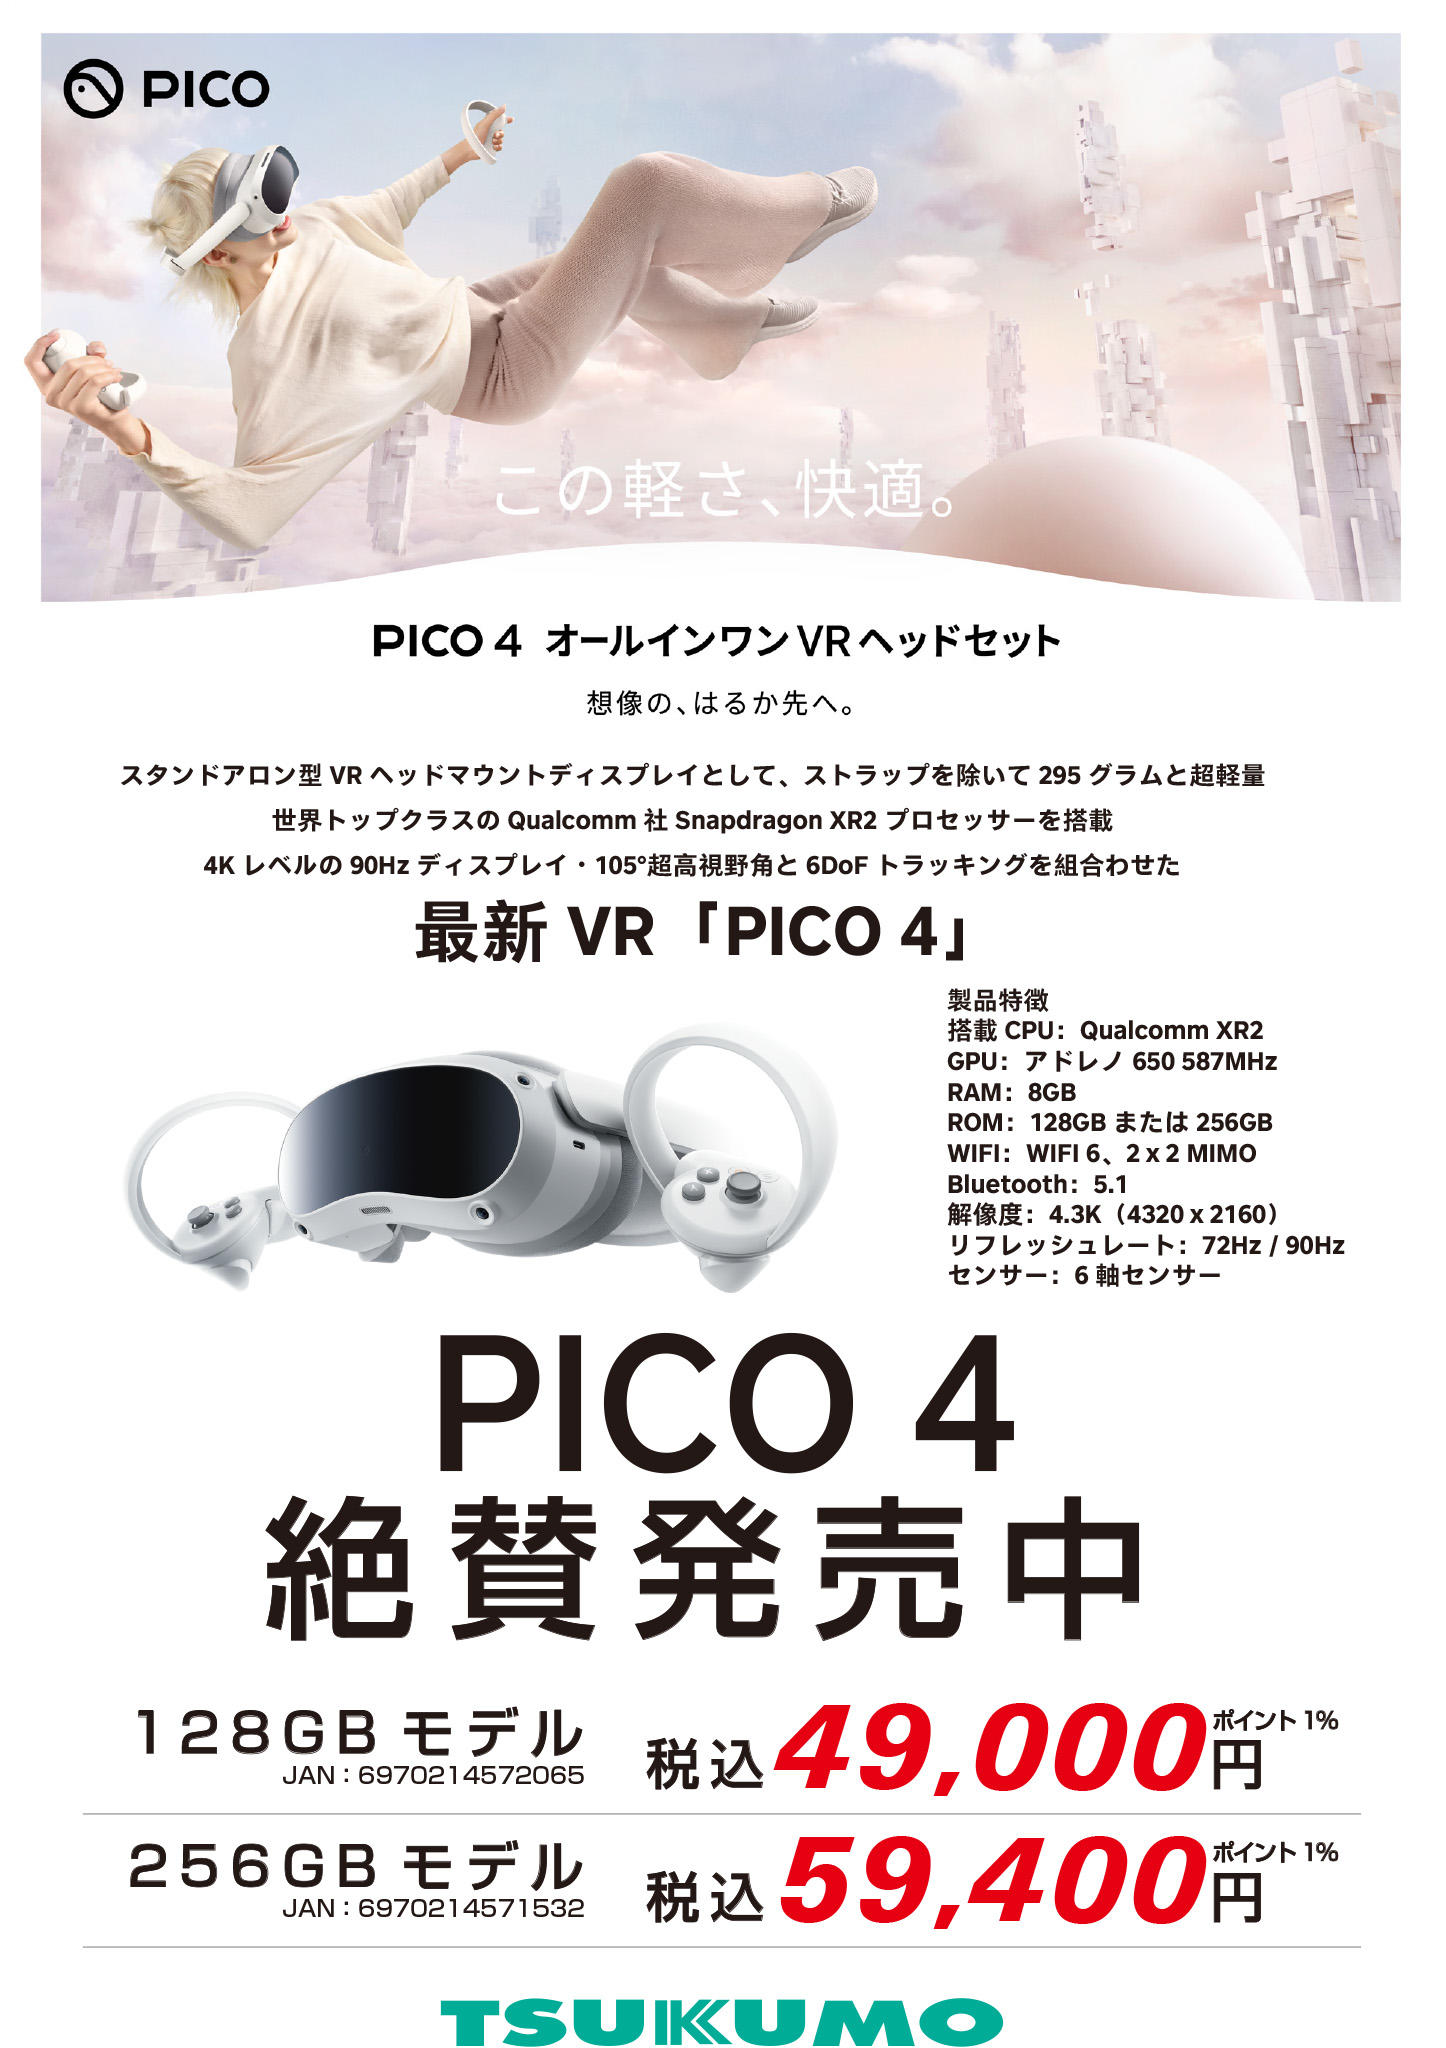 PICO4 128GB 付属品一式あり ヘッドマウントディスプレイ VR 【楽天最